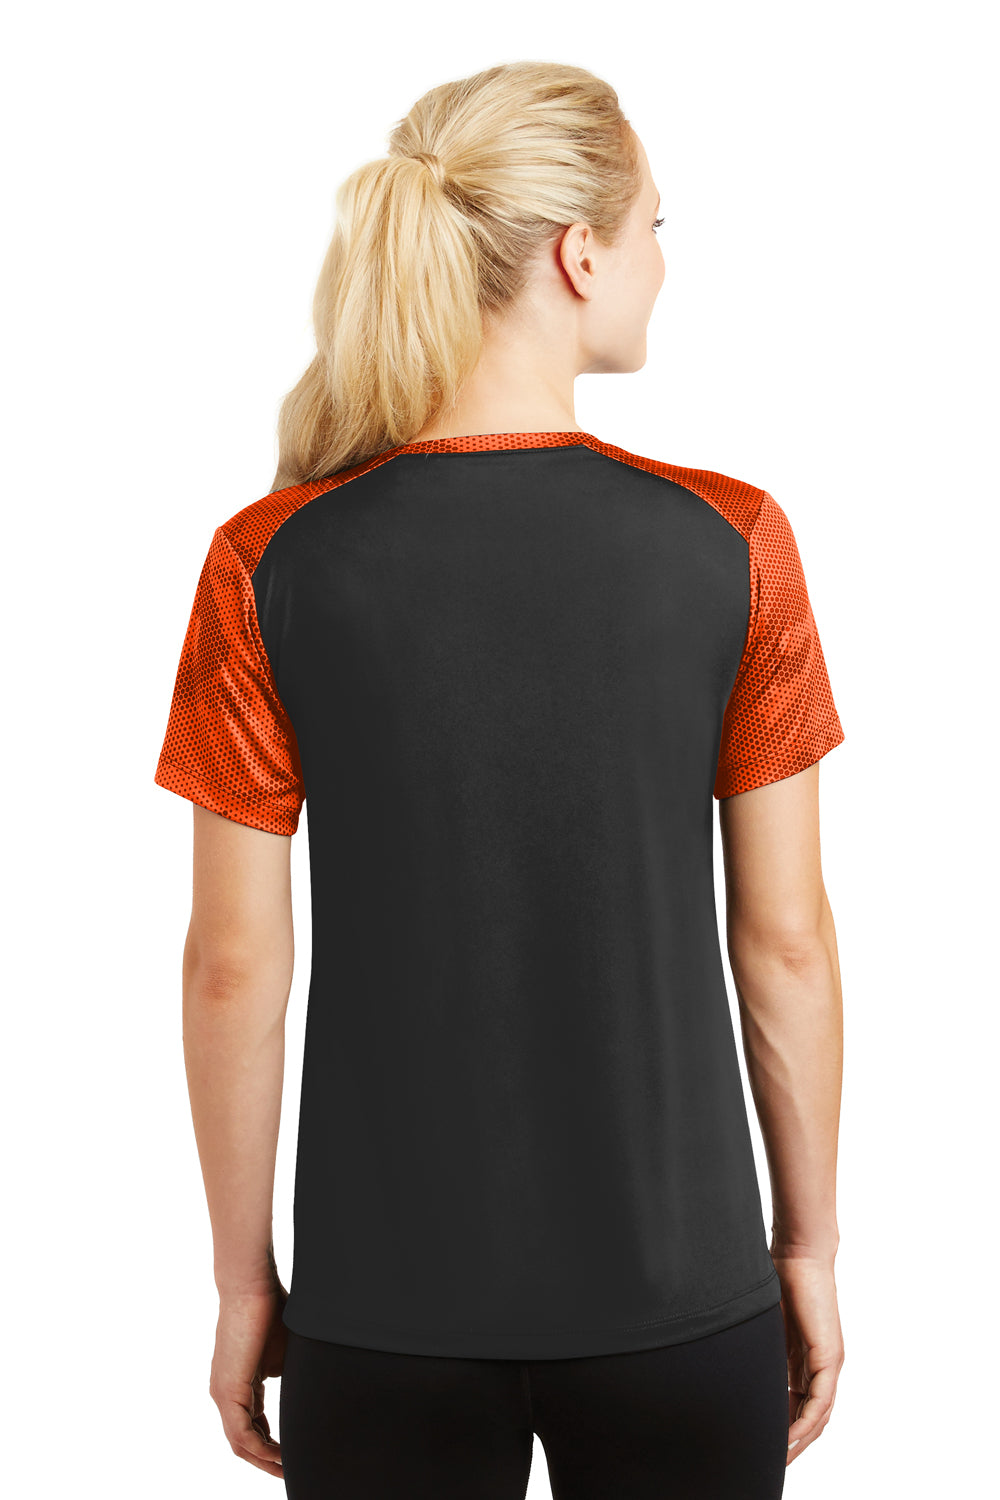 Sport-Tek LST371 Womens CamoHex Moisture Wicking Short Sleeve V-Neck T-Shirt Black/Orange Back